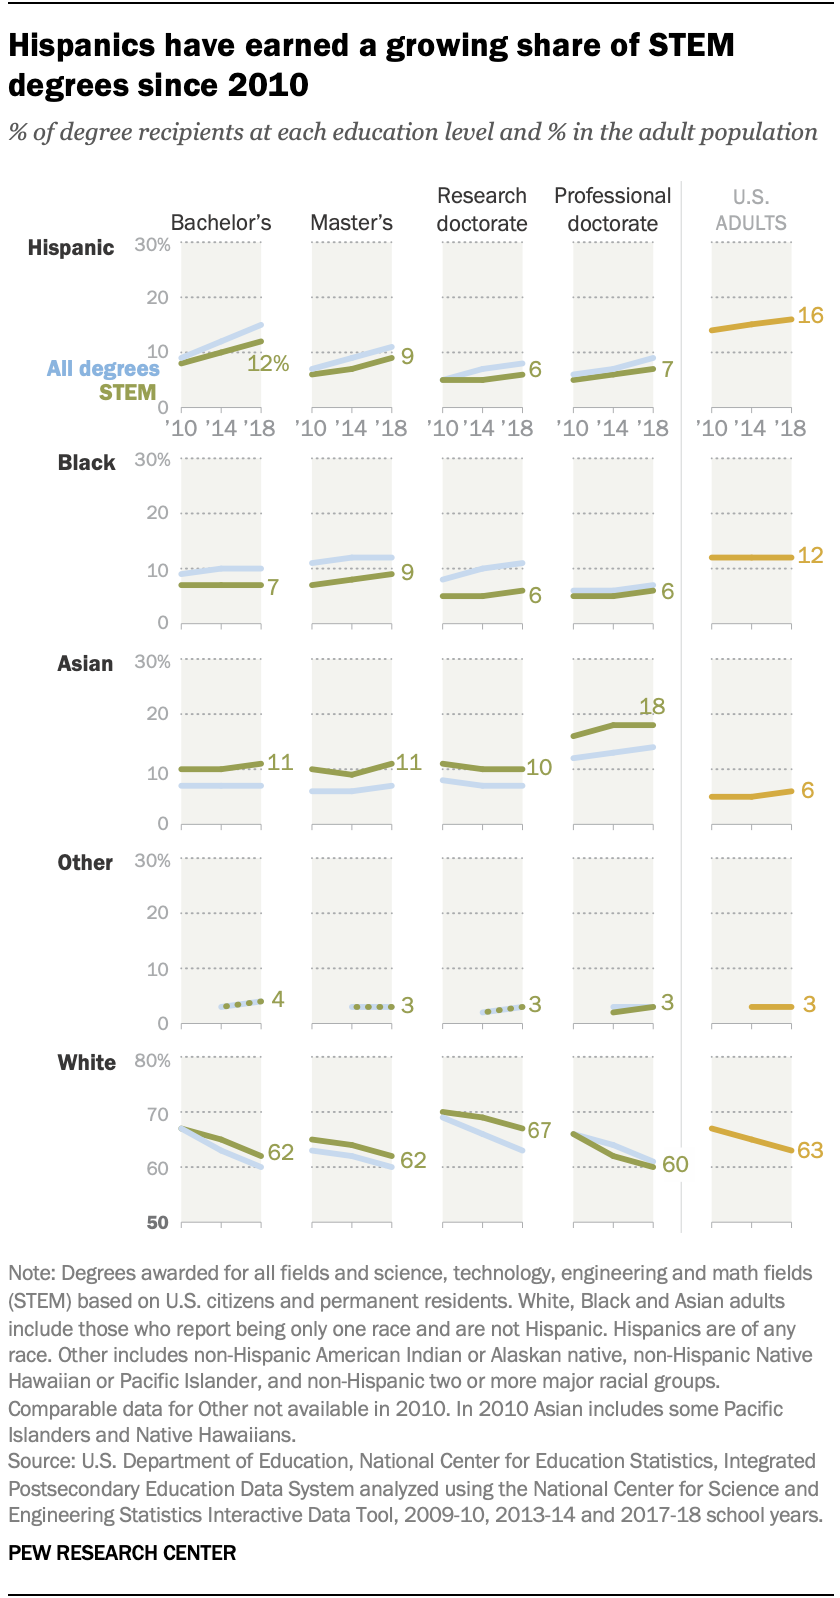 图表显示，自2010年以来，拉美裔在STEM学位中所占比例不断上升